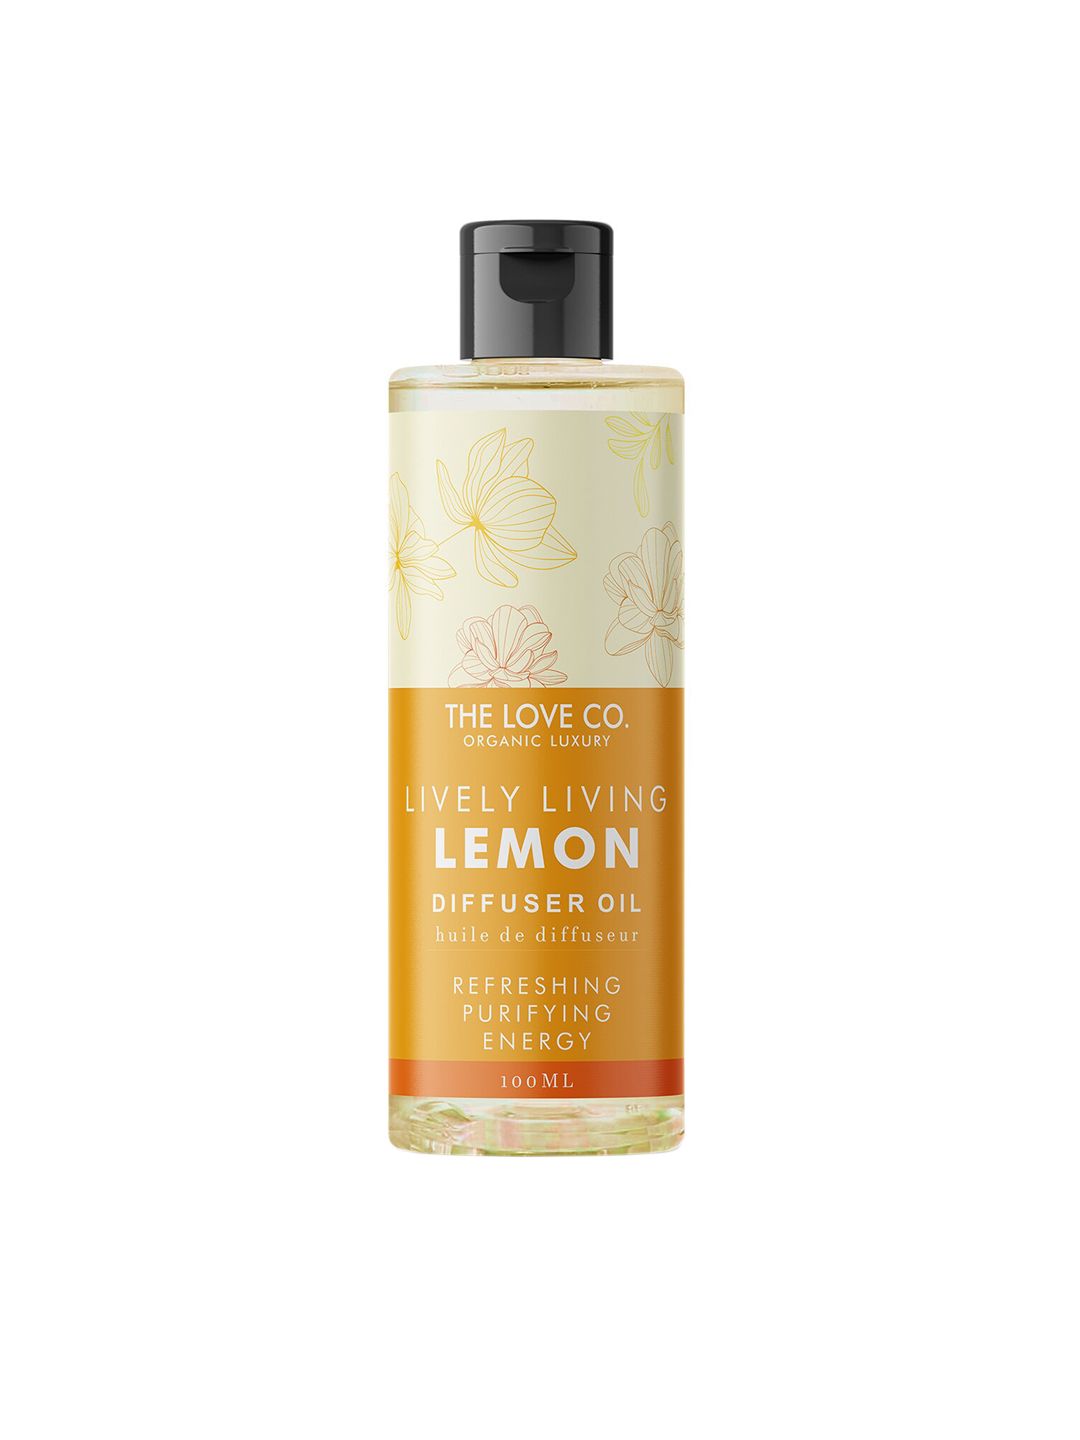 THE LOVE CO. Lemon Diffuser Oil - 100 ml Price in India